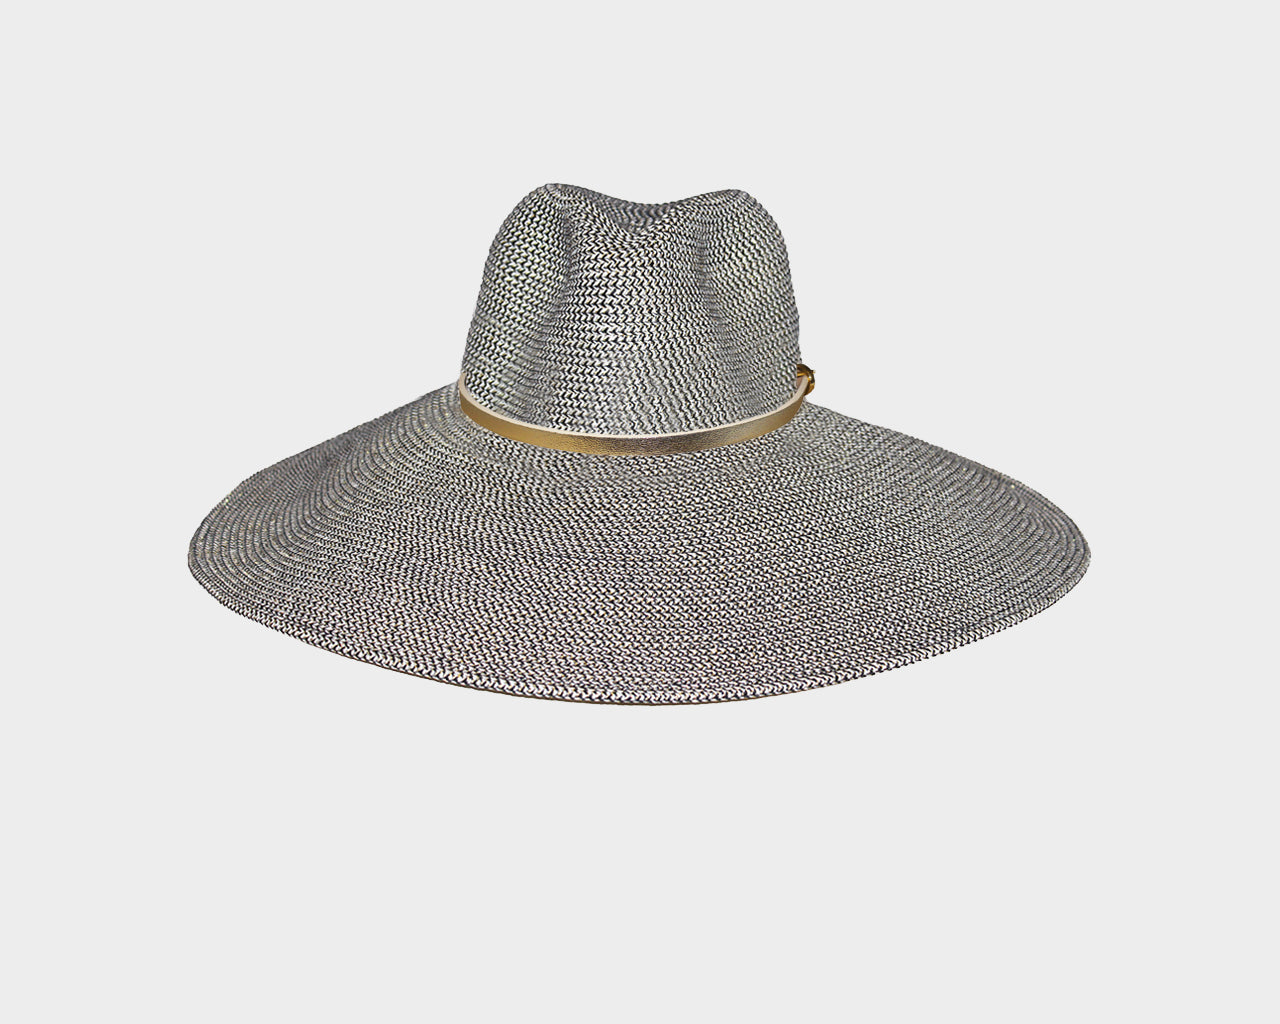 Large Brim Sun Hat - The Montauk – Regine Chevallier